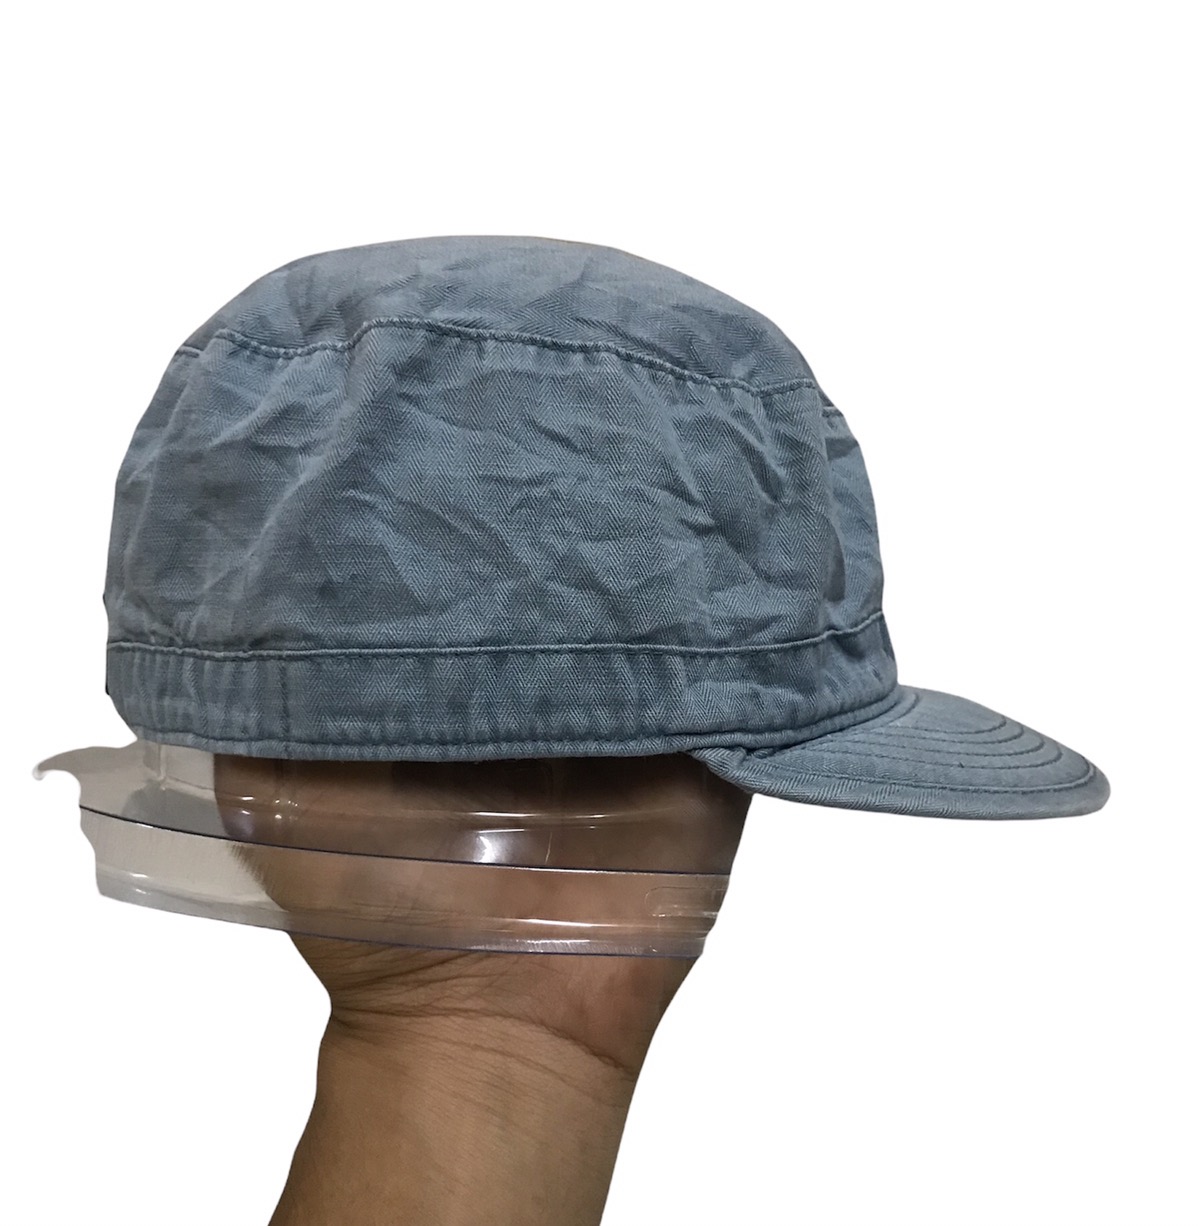 Uniqlo x Undercover Military Hat - 3